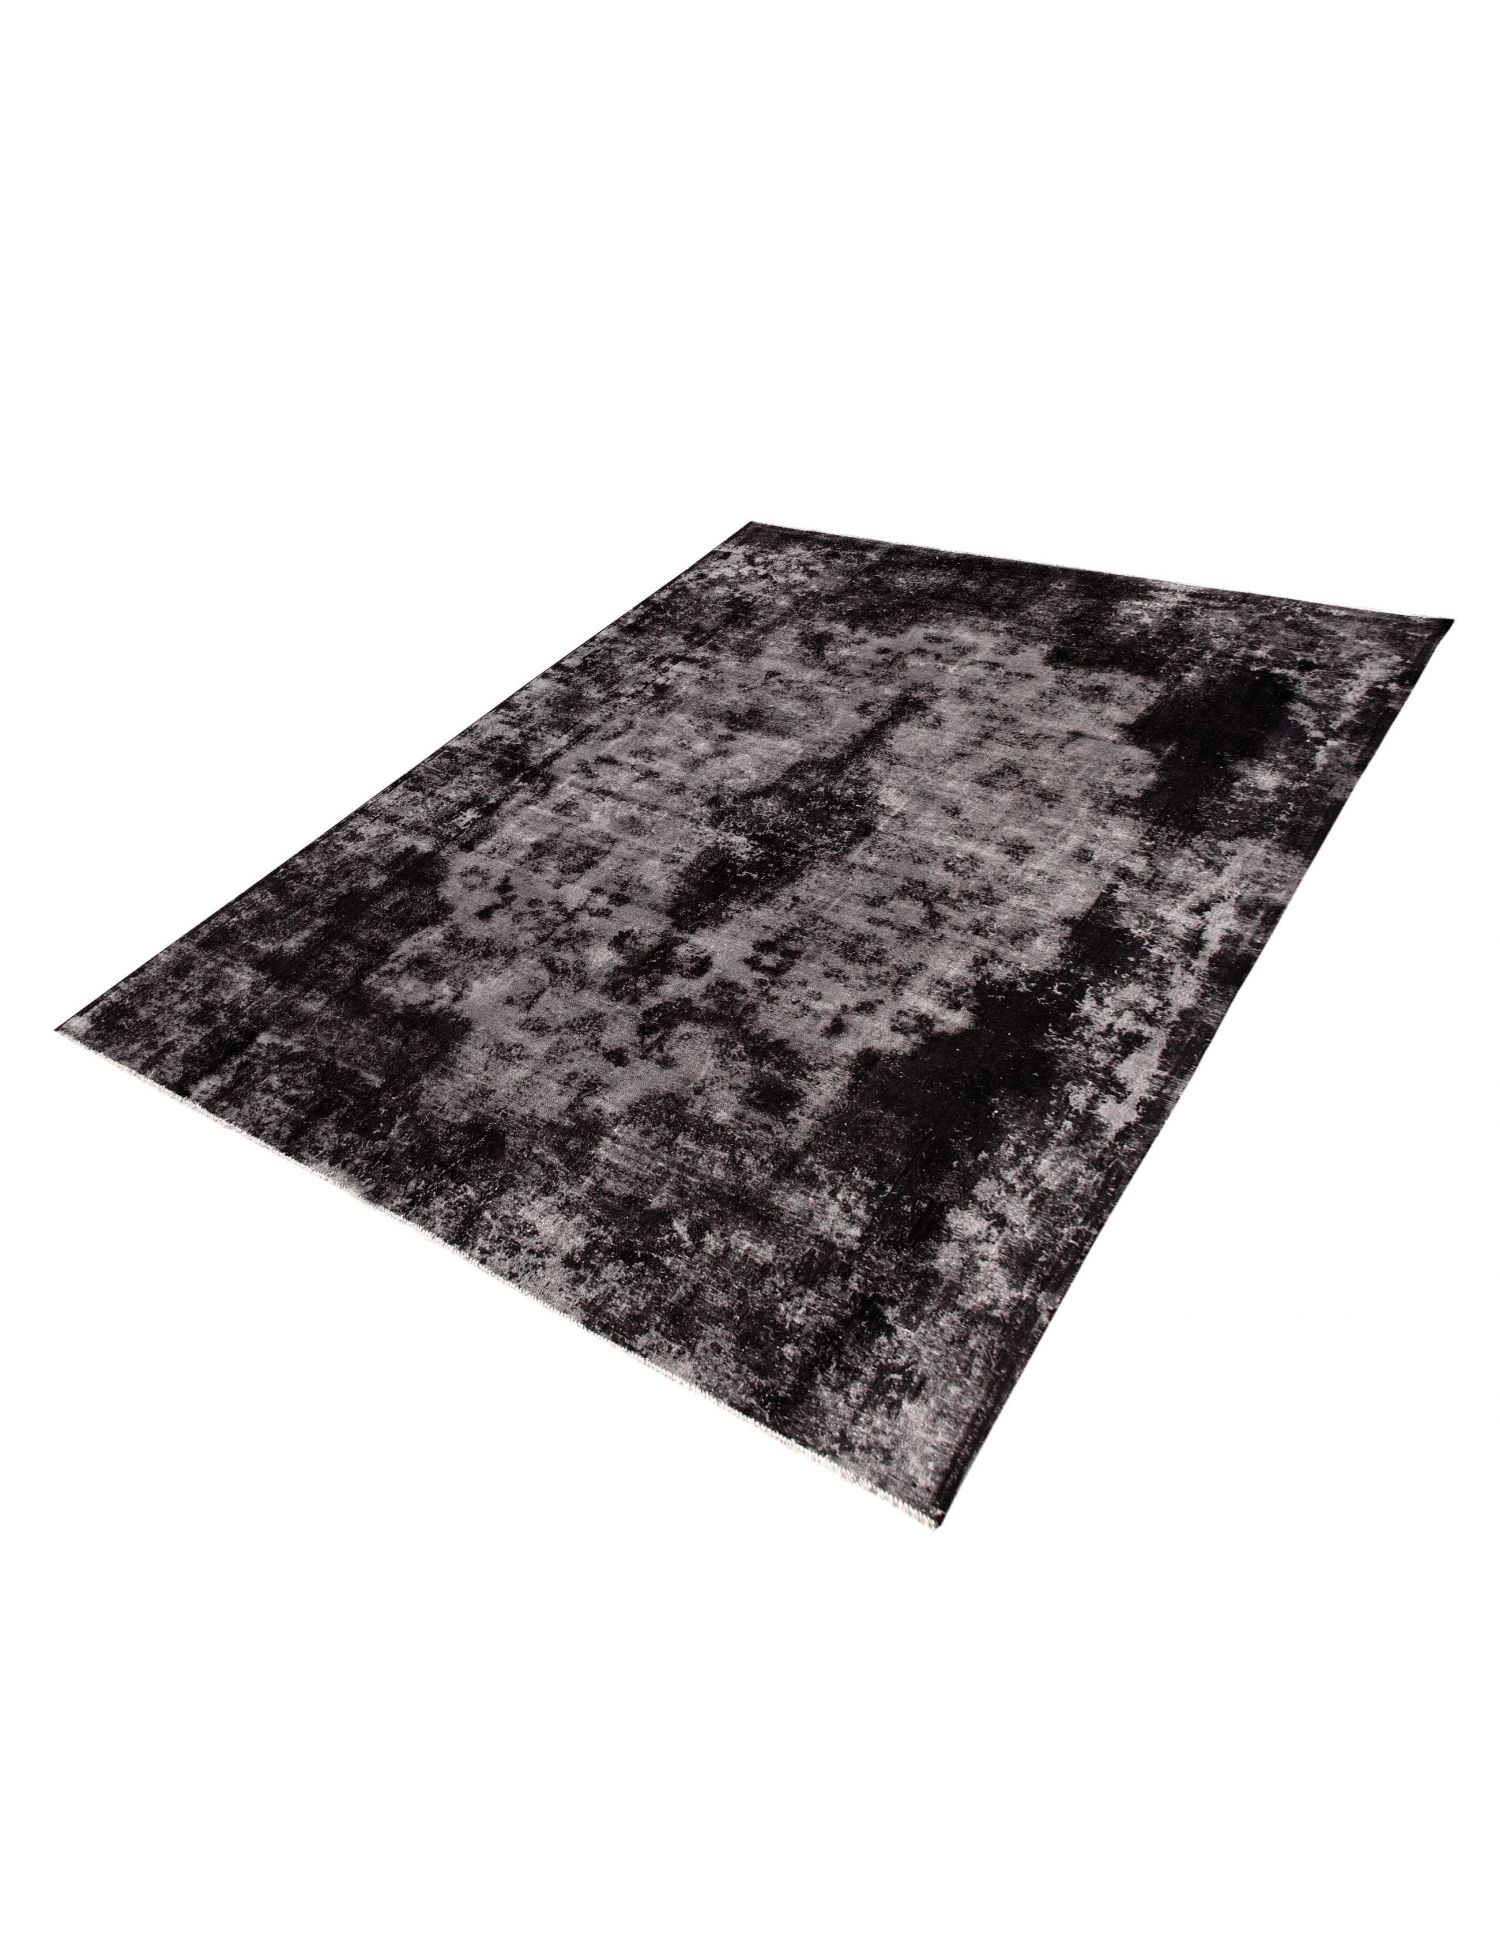 Persian Vintage Carpet  black <br/>356 x 262 cm